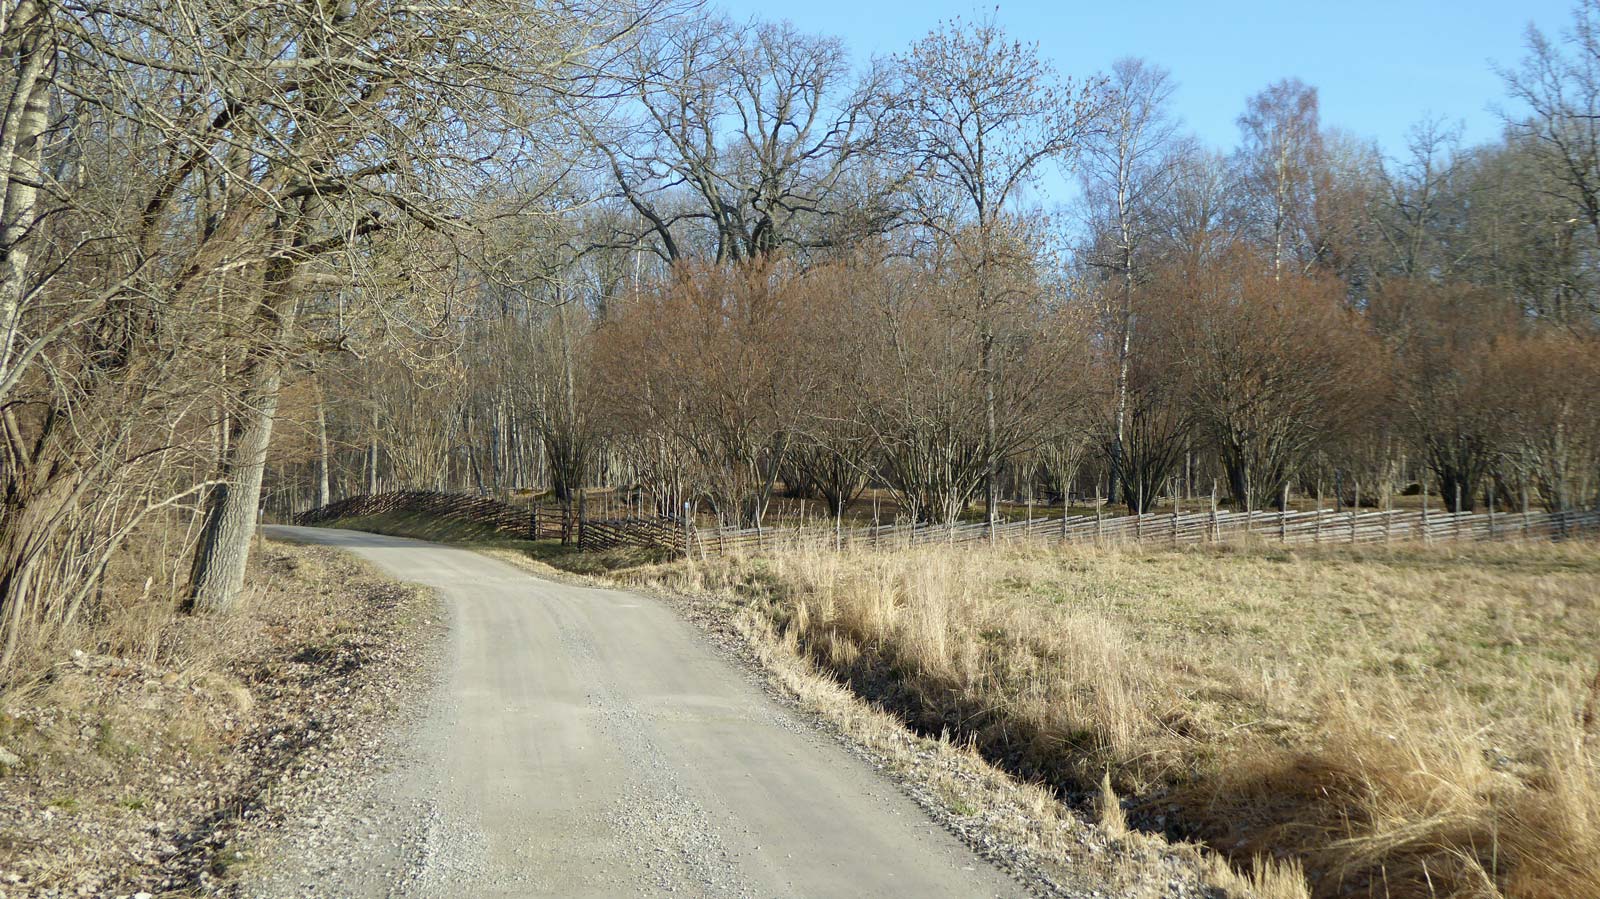 Från Hörningsnäs får man först gå någon kilometer längs en mycket glest trafikerad väg, delvis med naturreservat på vänstra sidan.